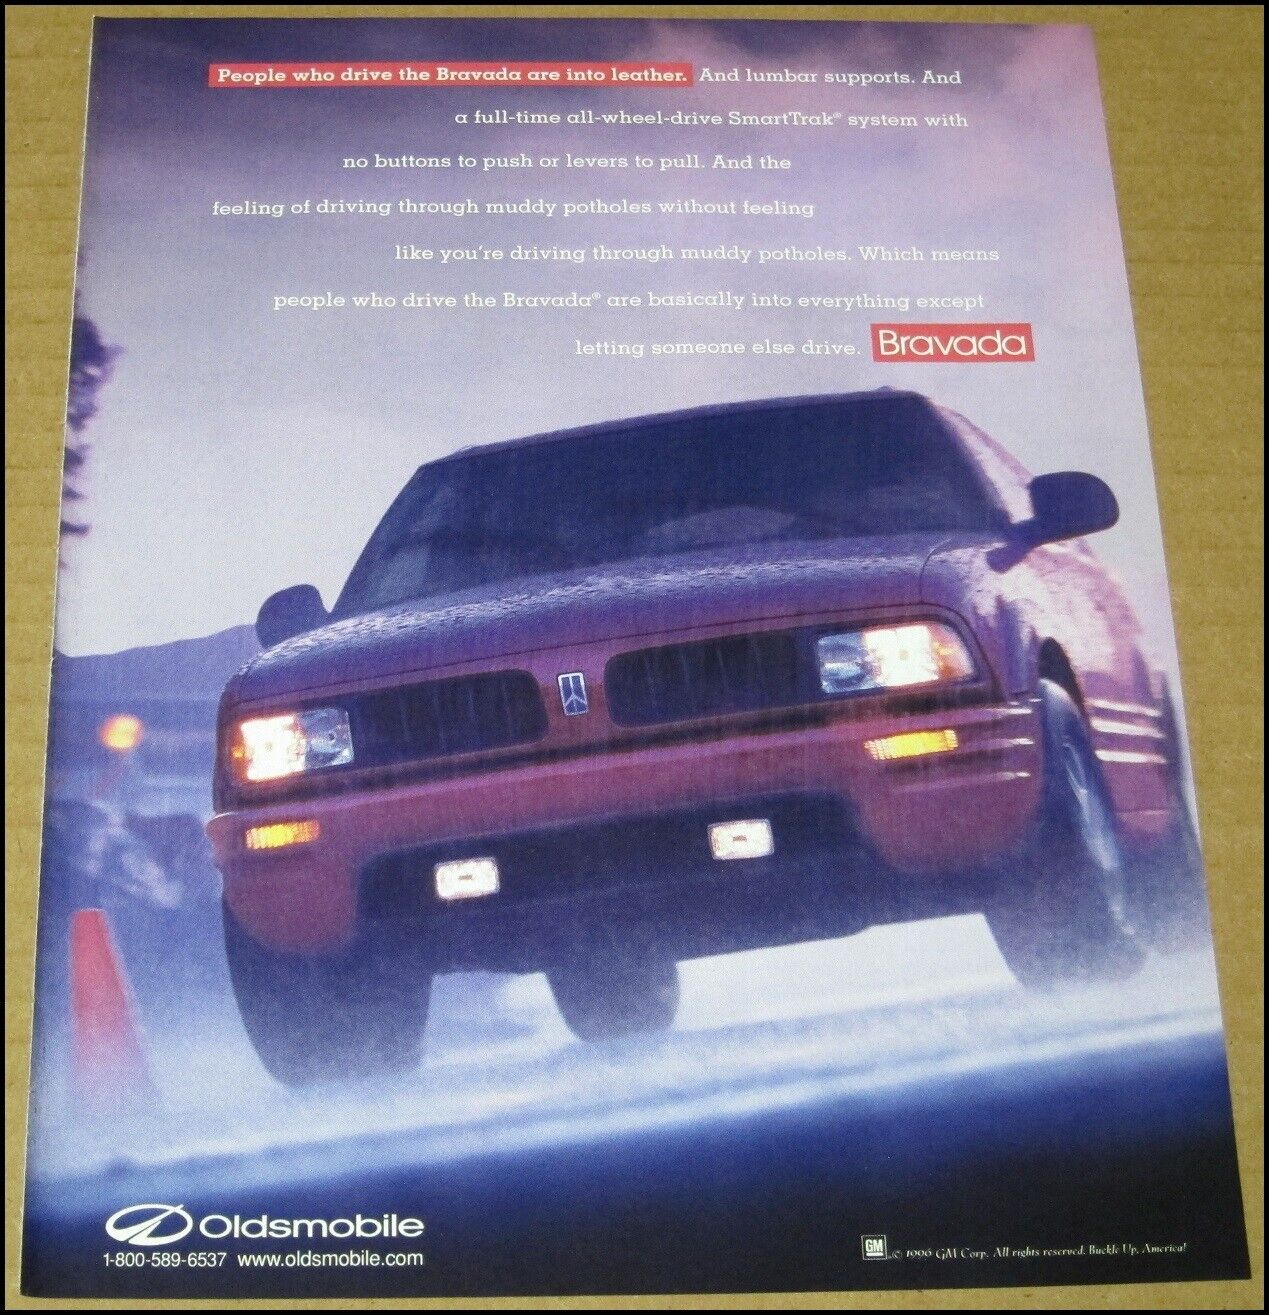 1997 Oldsmobile Bravada Print Ad 1996 Automobile Car Advertisement Vintage SUV